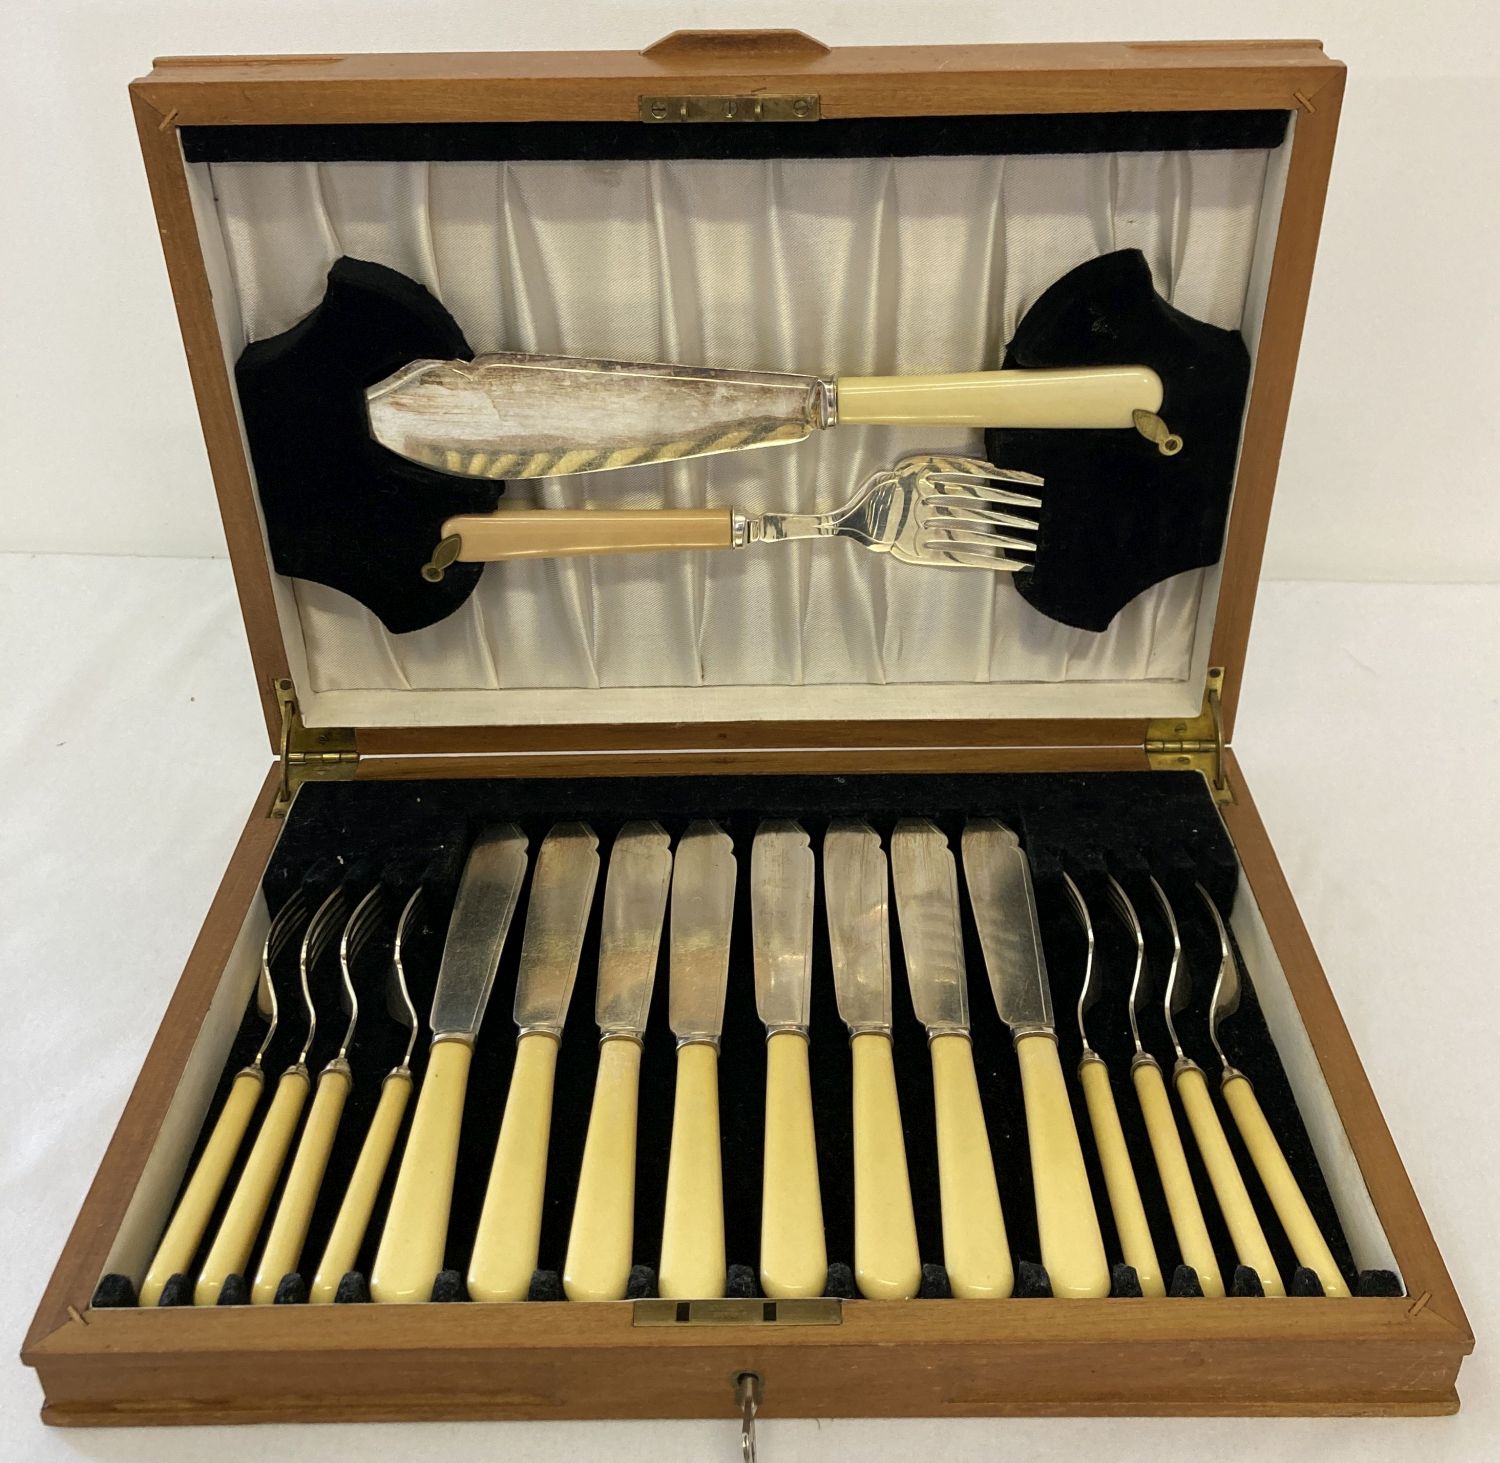 A wooden cased, 8 serving, vintage set of fish knives, forks & servers by John Sanderson, Sheffield.